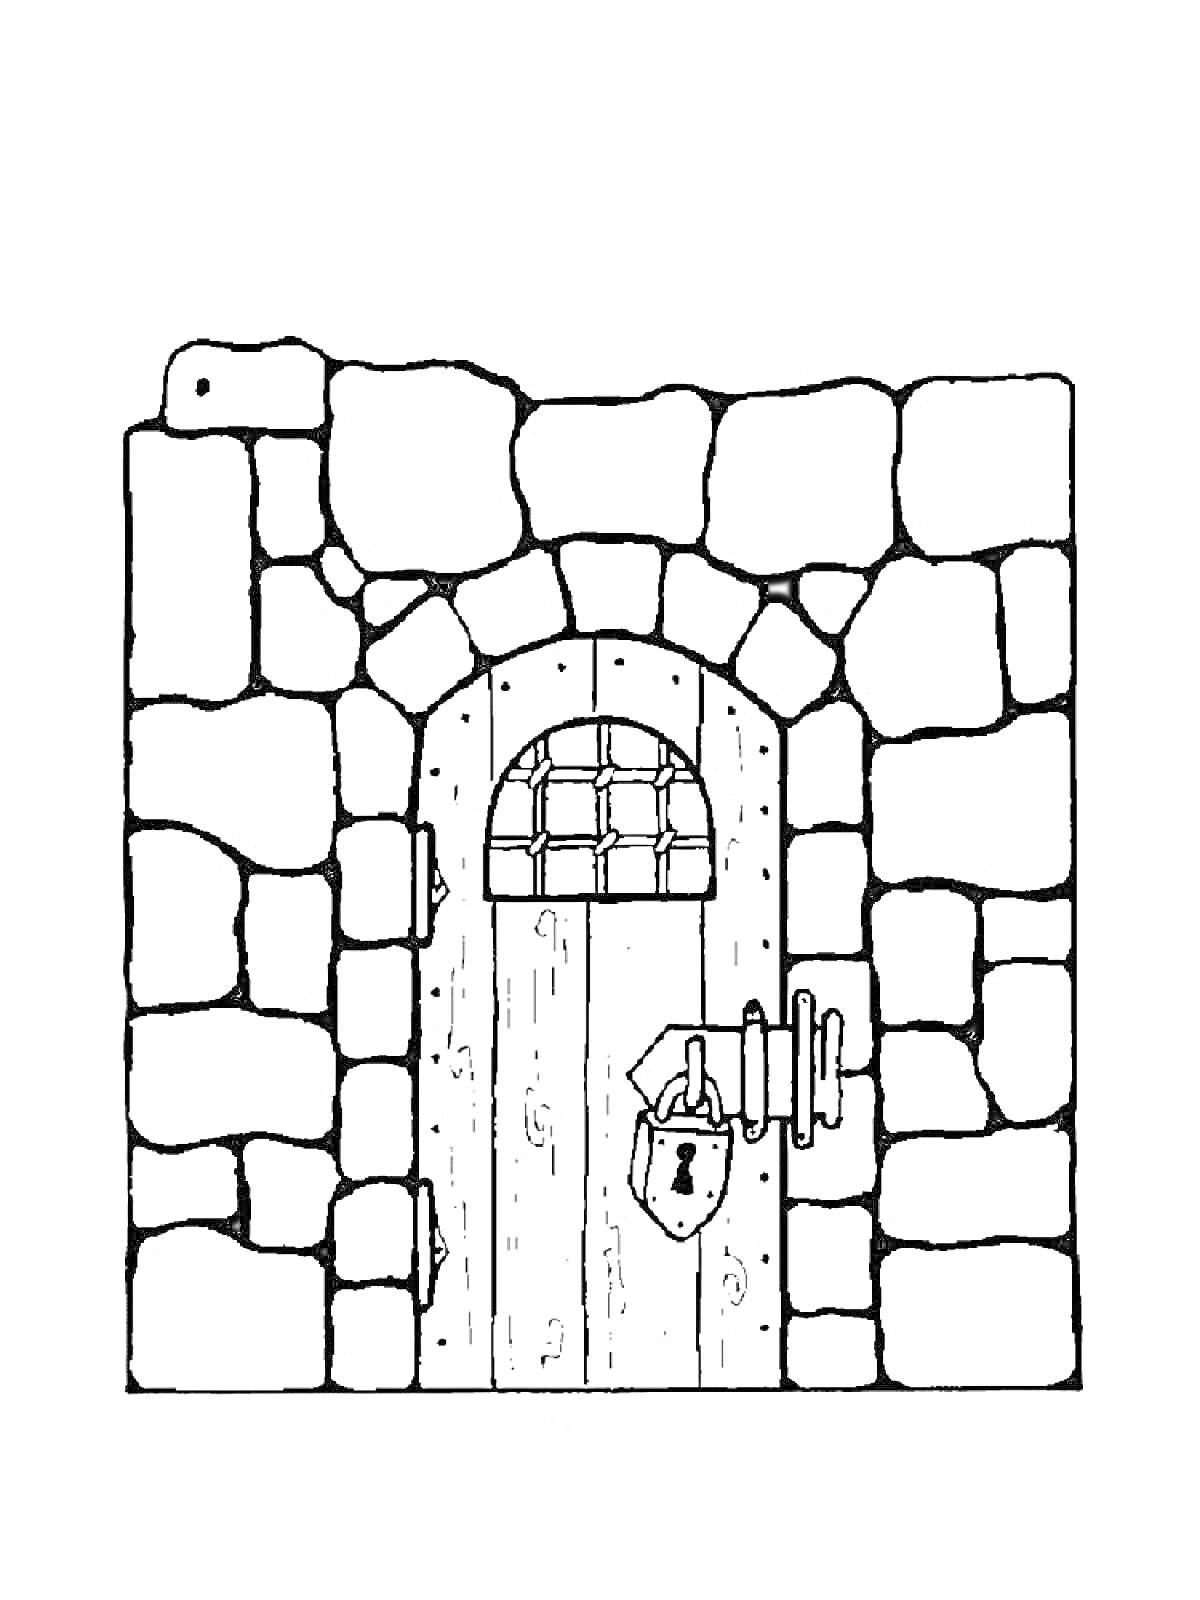 Каменная стена с деревянной дверью, замочной скважиной и замком